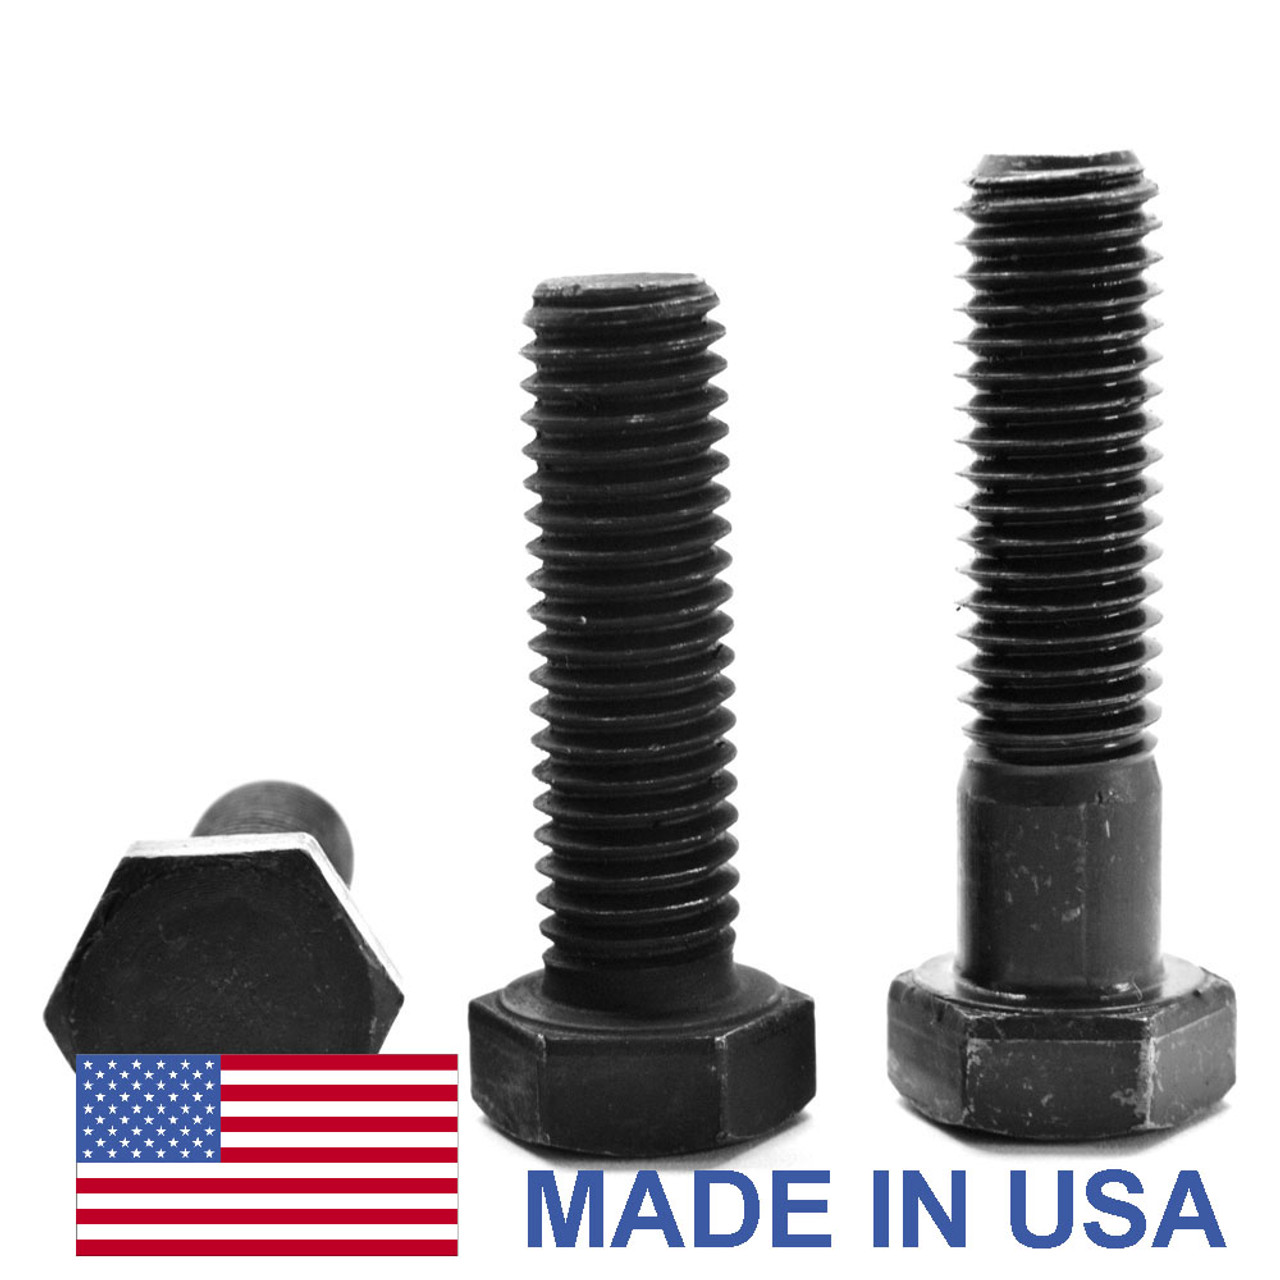 1"-14 x 6" (PT) UNS Thread Grade 8 Hex Cap Screw (Bolt) - USA Alloy Steel Black Oxide